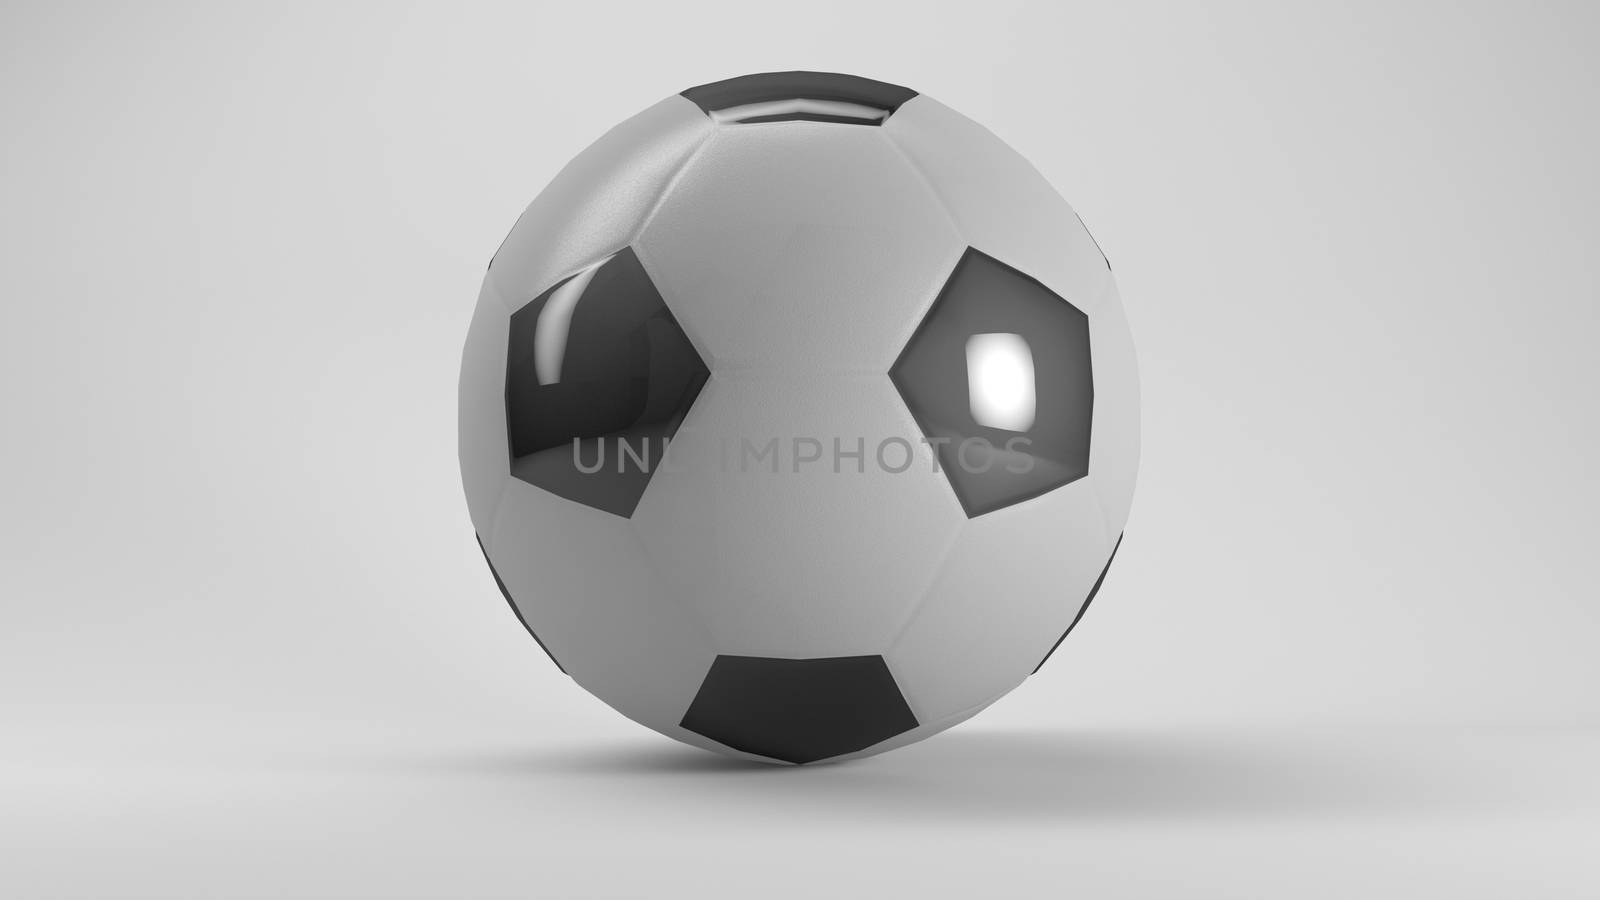 3d illustration of soccer ball on white background